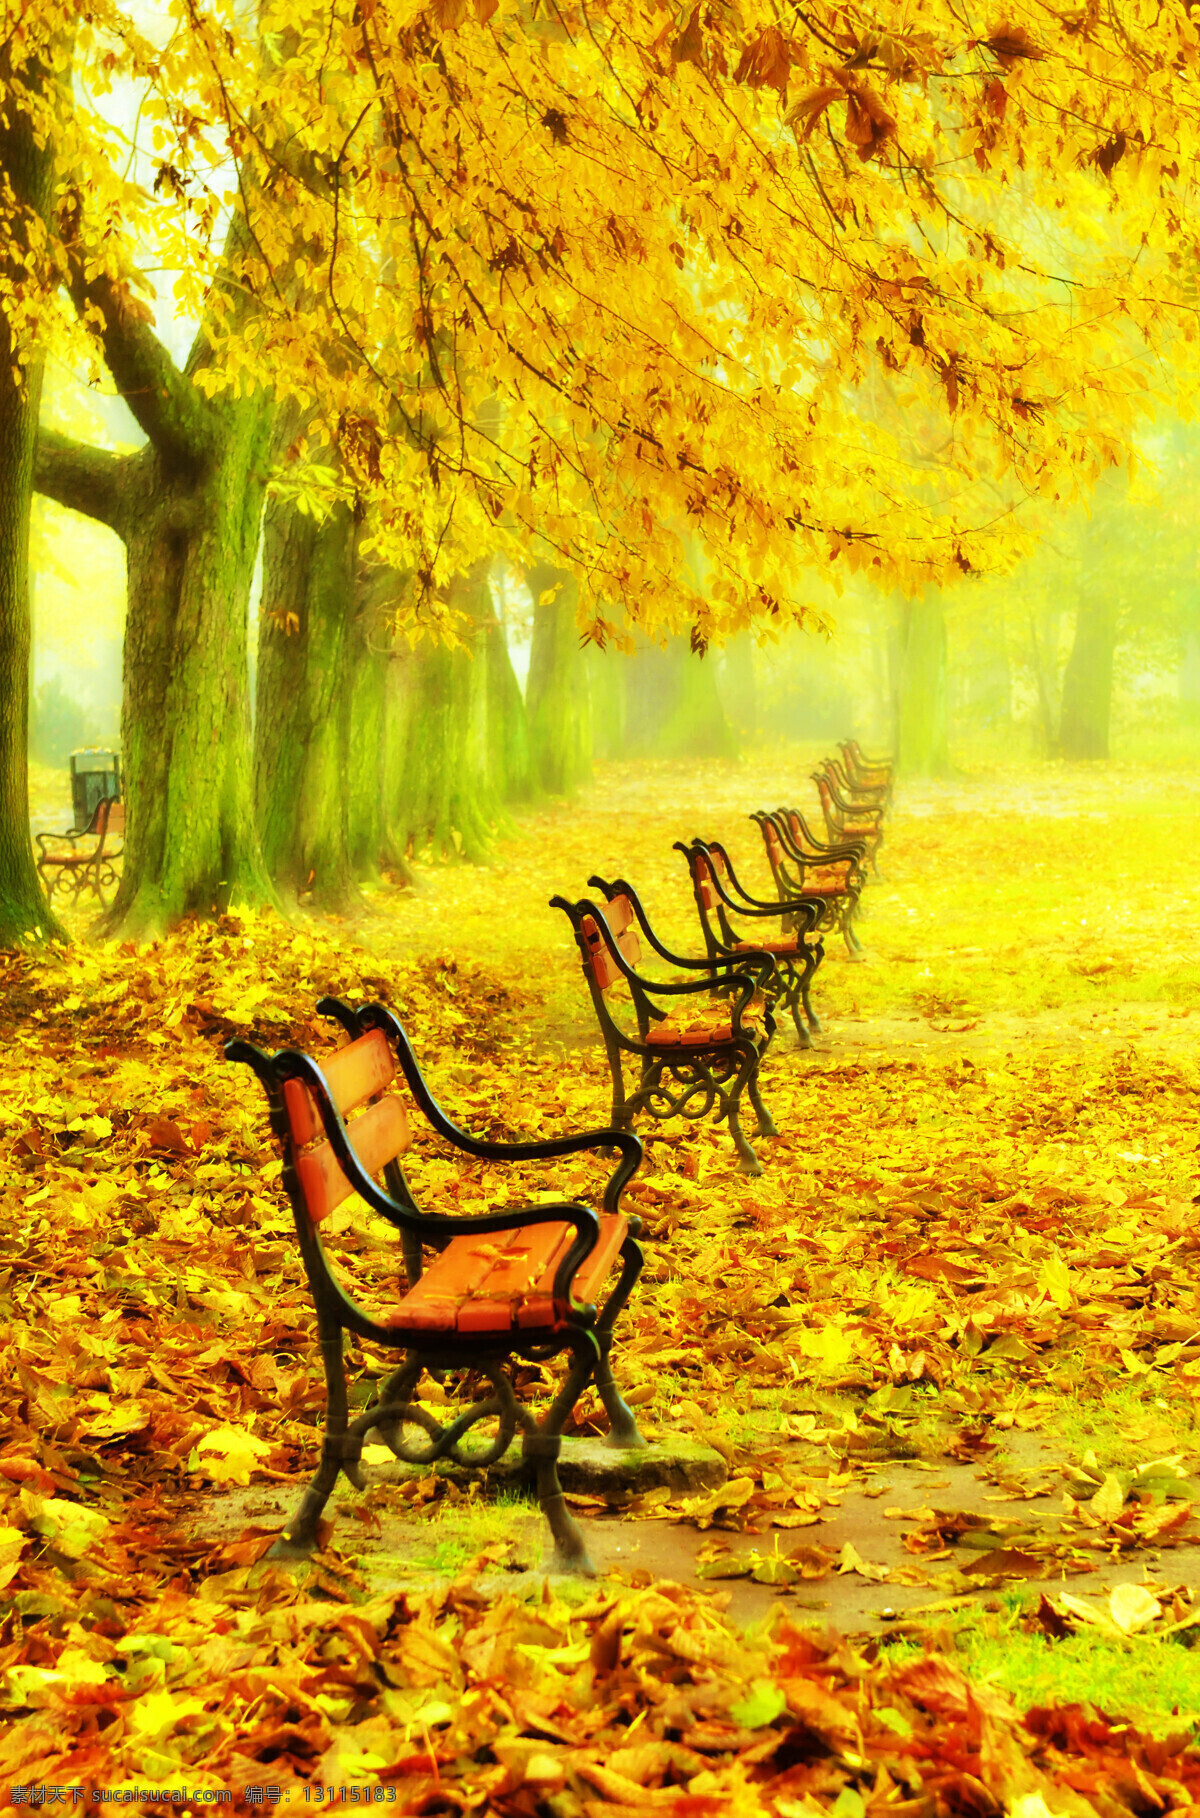 秋天 公园 风景摄影 秋天风景 秋景 秋天色彩 枫叶 叶子 秋天树木 落叶 树木 生态环境 野外 自然 自然生态 椅子 花草树木 生物世界 黄色